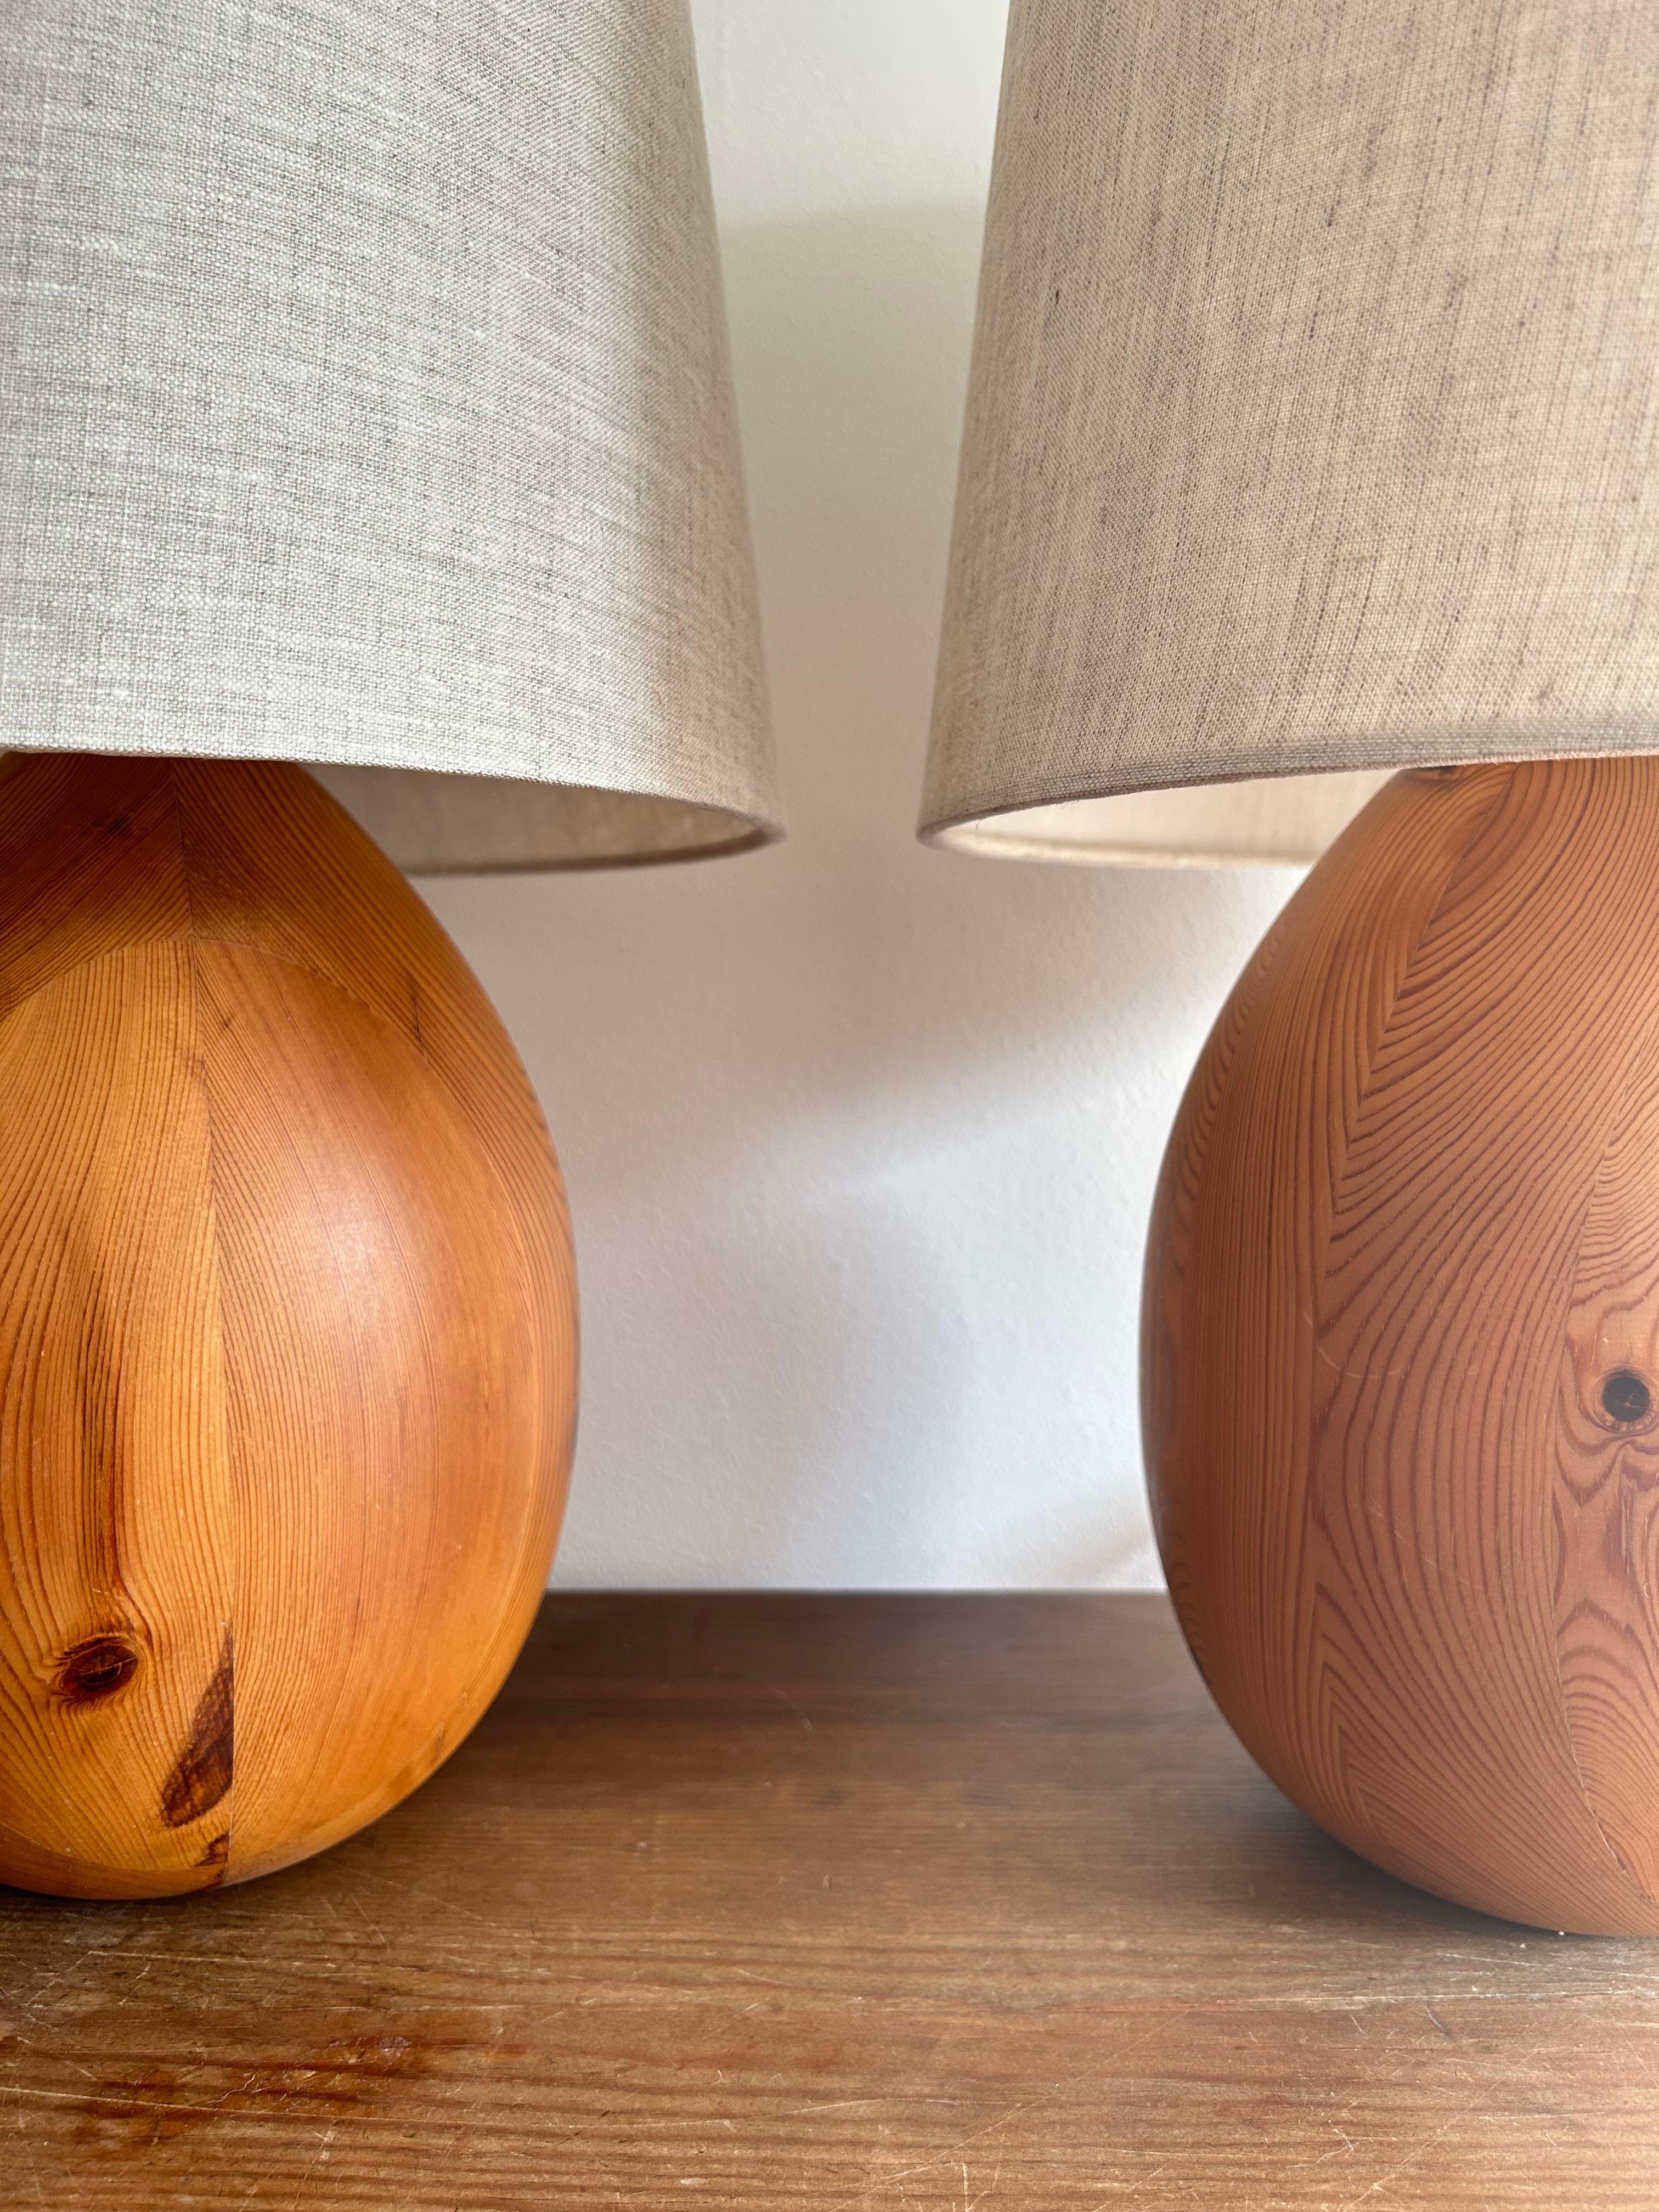 Rare paire de lampes de table en pin fabriquées en Suède dans les années 1960.

Les lampes sont fabriquées en pin traité à l'huile, ce qui fait ressortir encore davantage la beauté du grain.
Les lampes sont dotées des douilles d'origine, du câblage